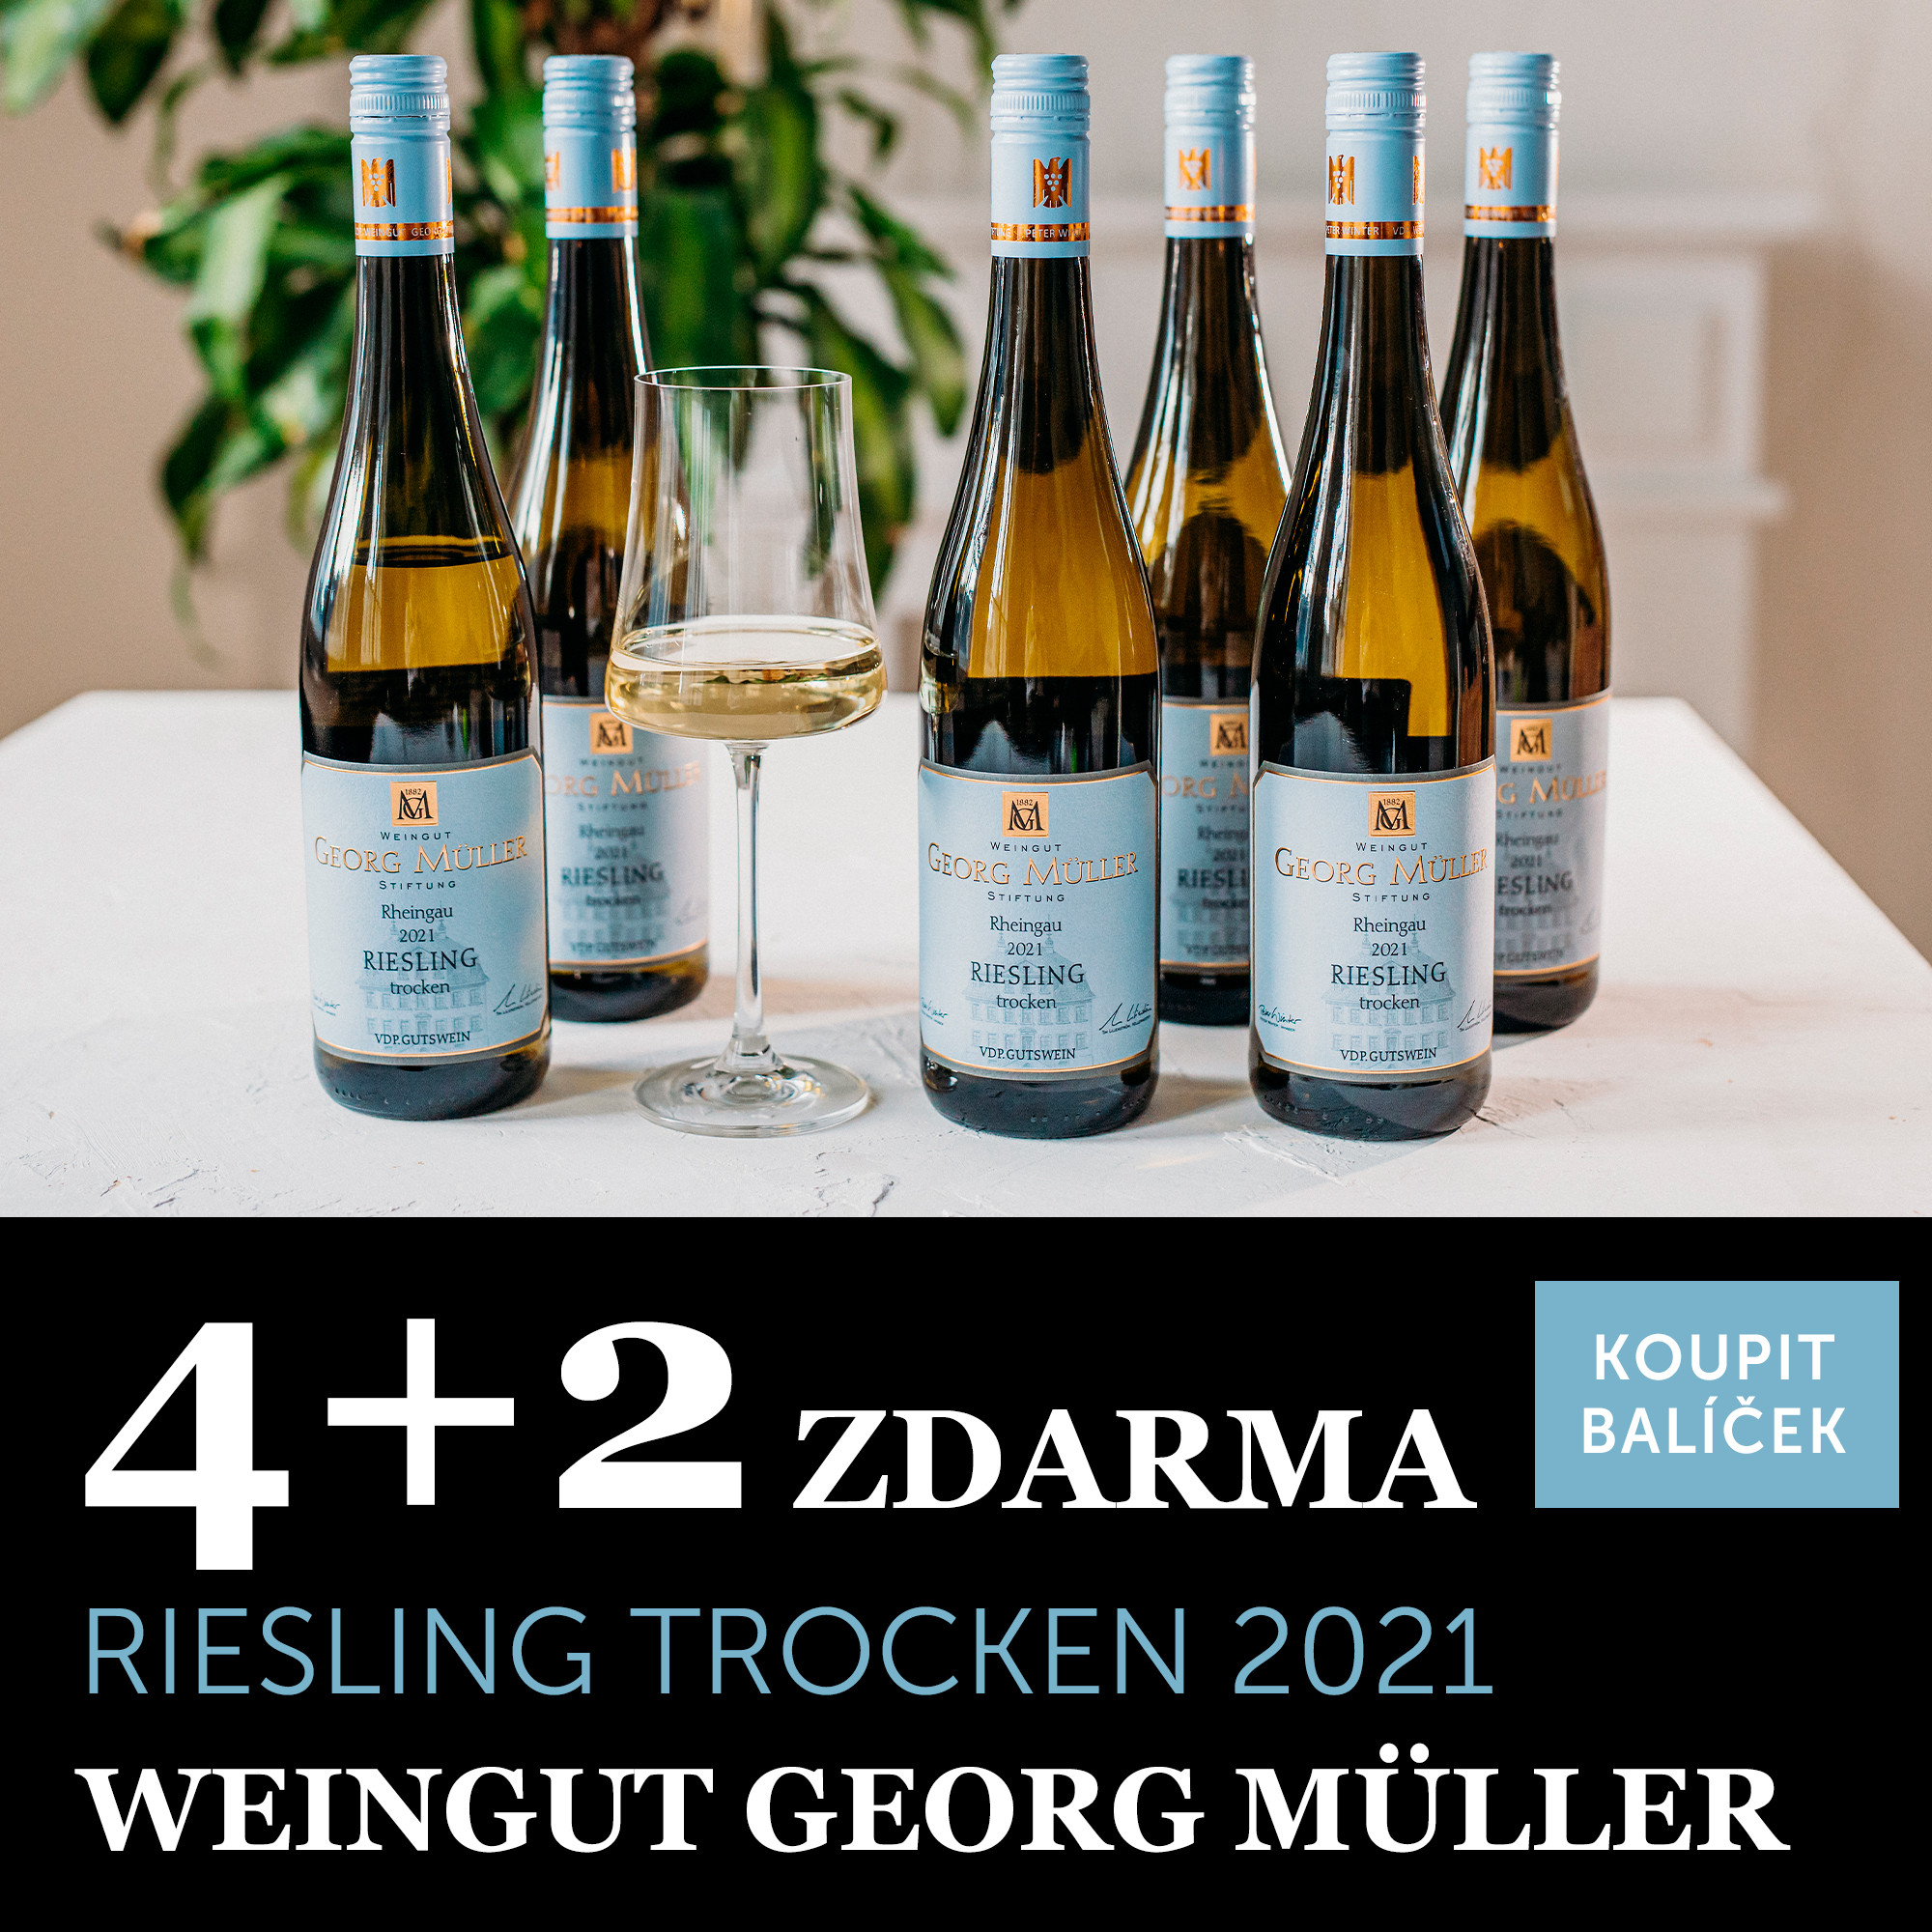 Georg Müller Riesling Gutswein trocken 2021 4+2 zdarma